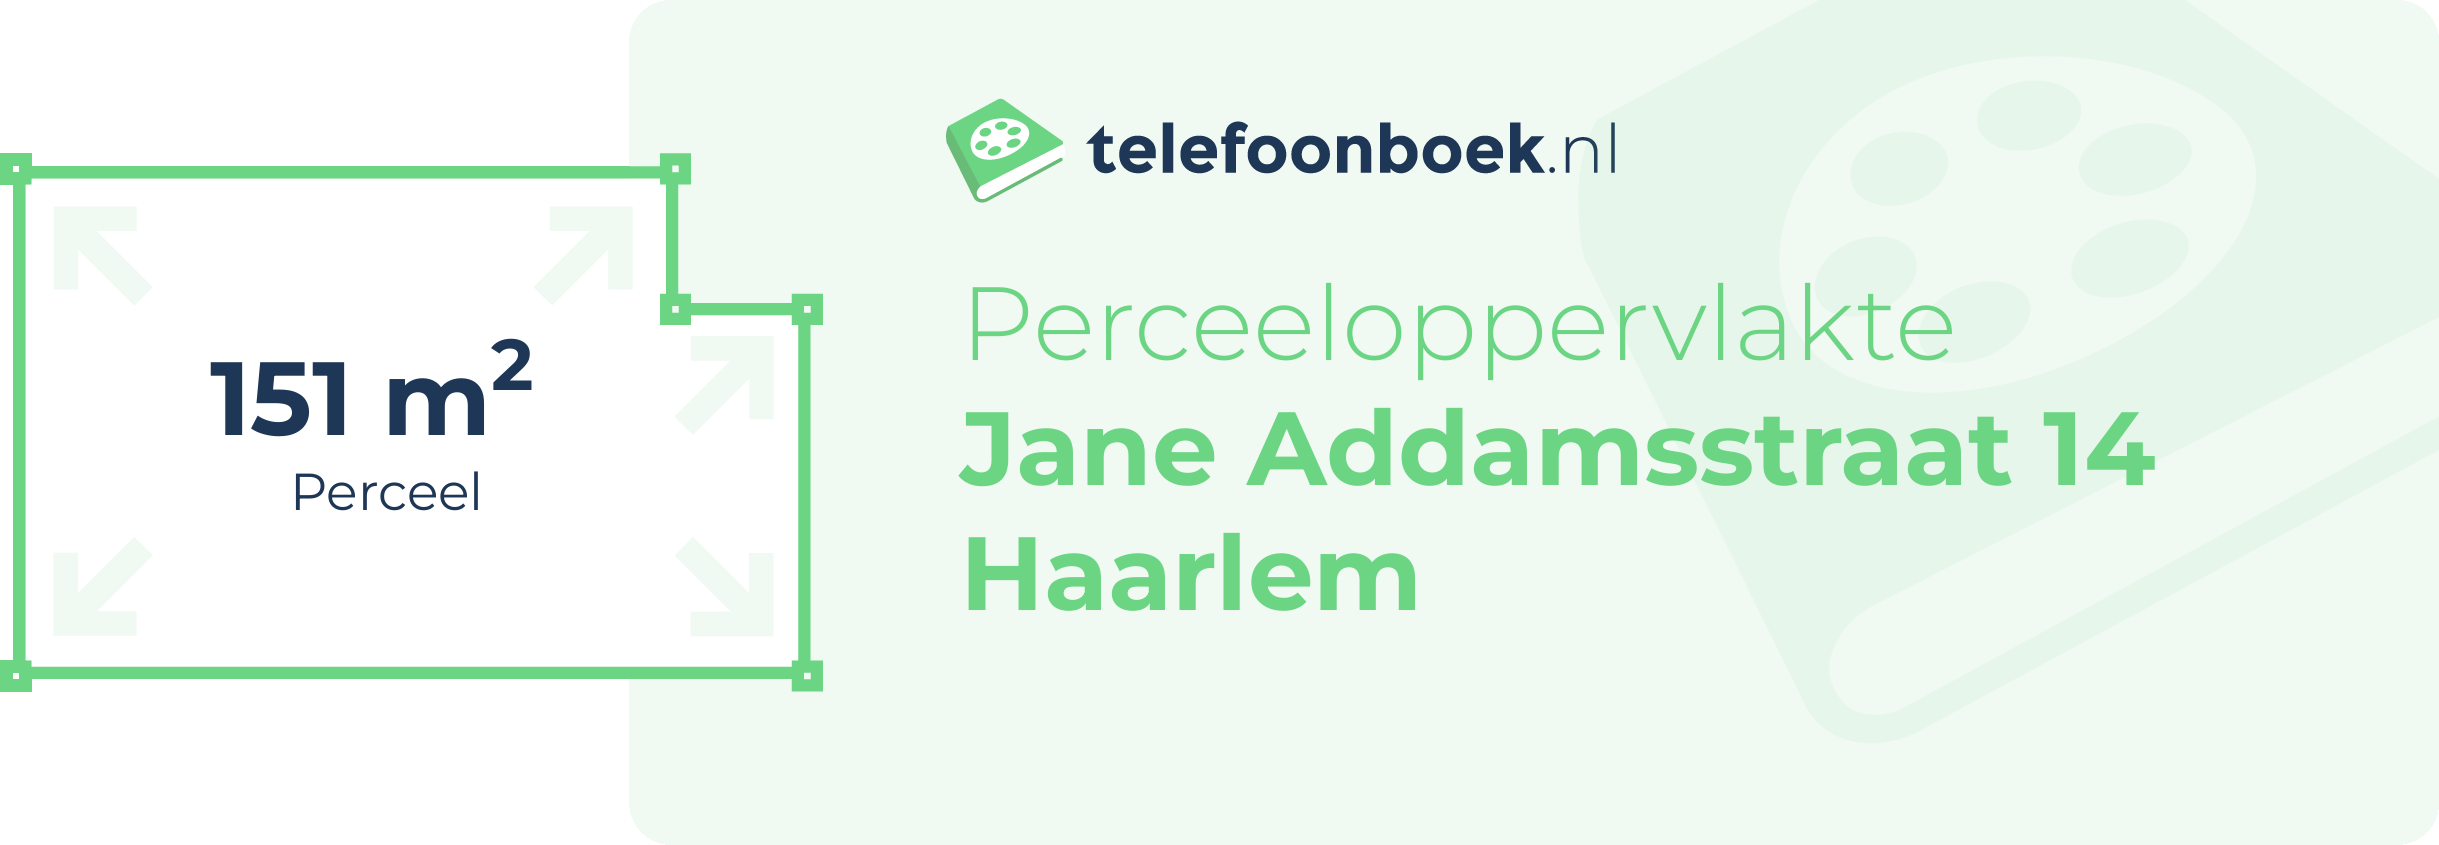 Perceeloppervlakte Jane Addamsstraat 14 Haarlem